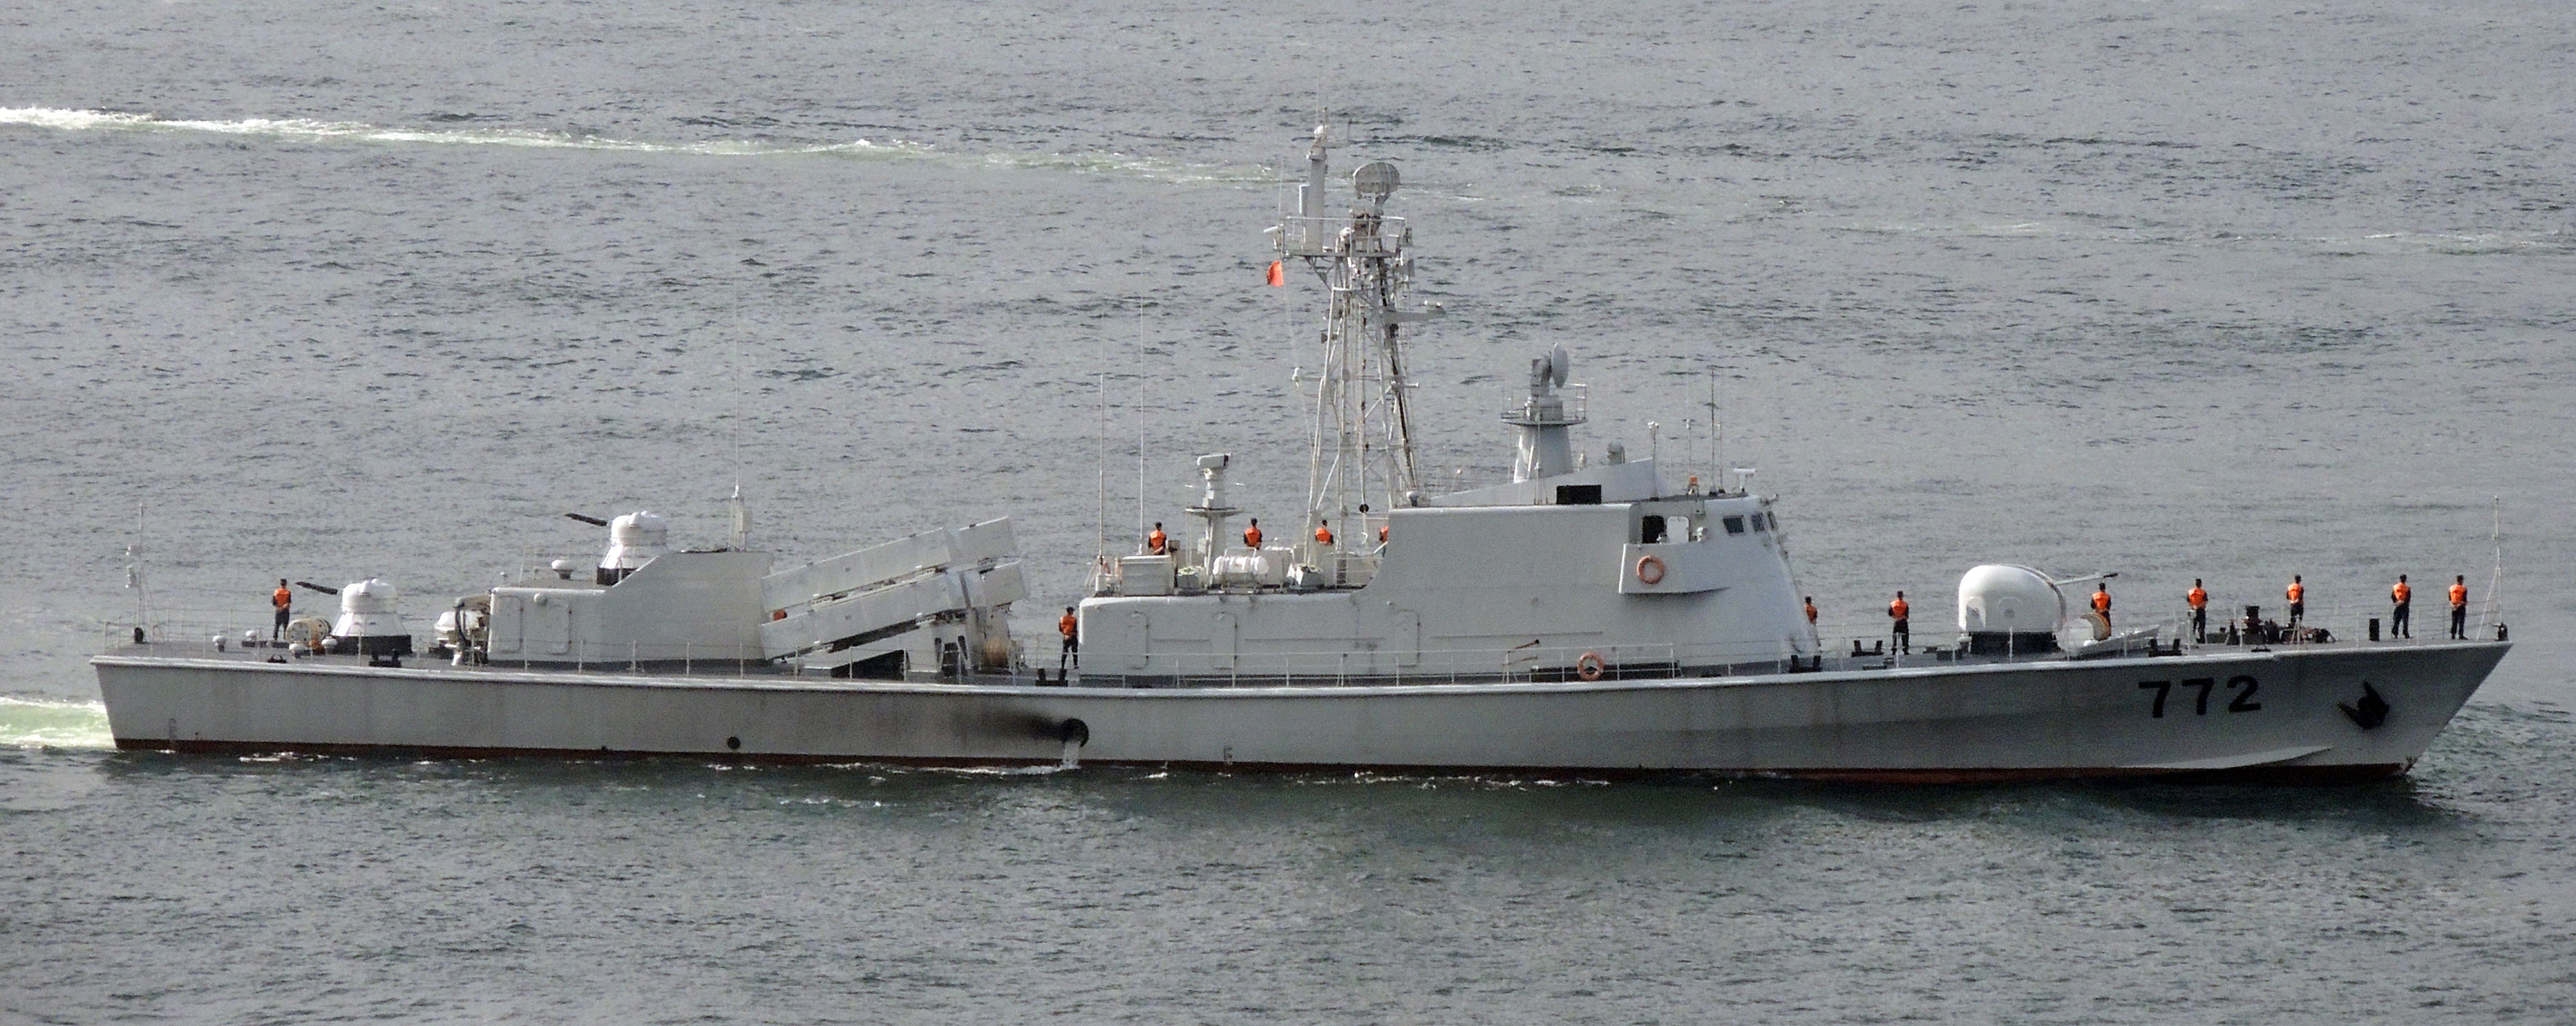 駐港部隊艦艇大隊037II型-772導彈艦 2012b.JPG